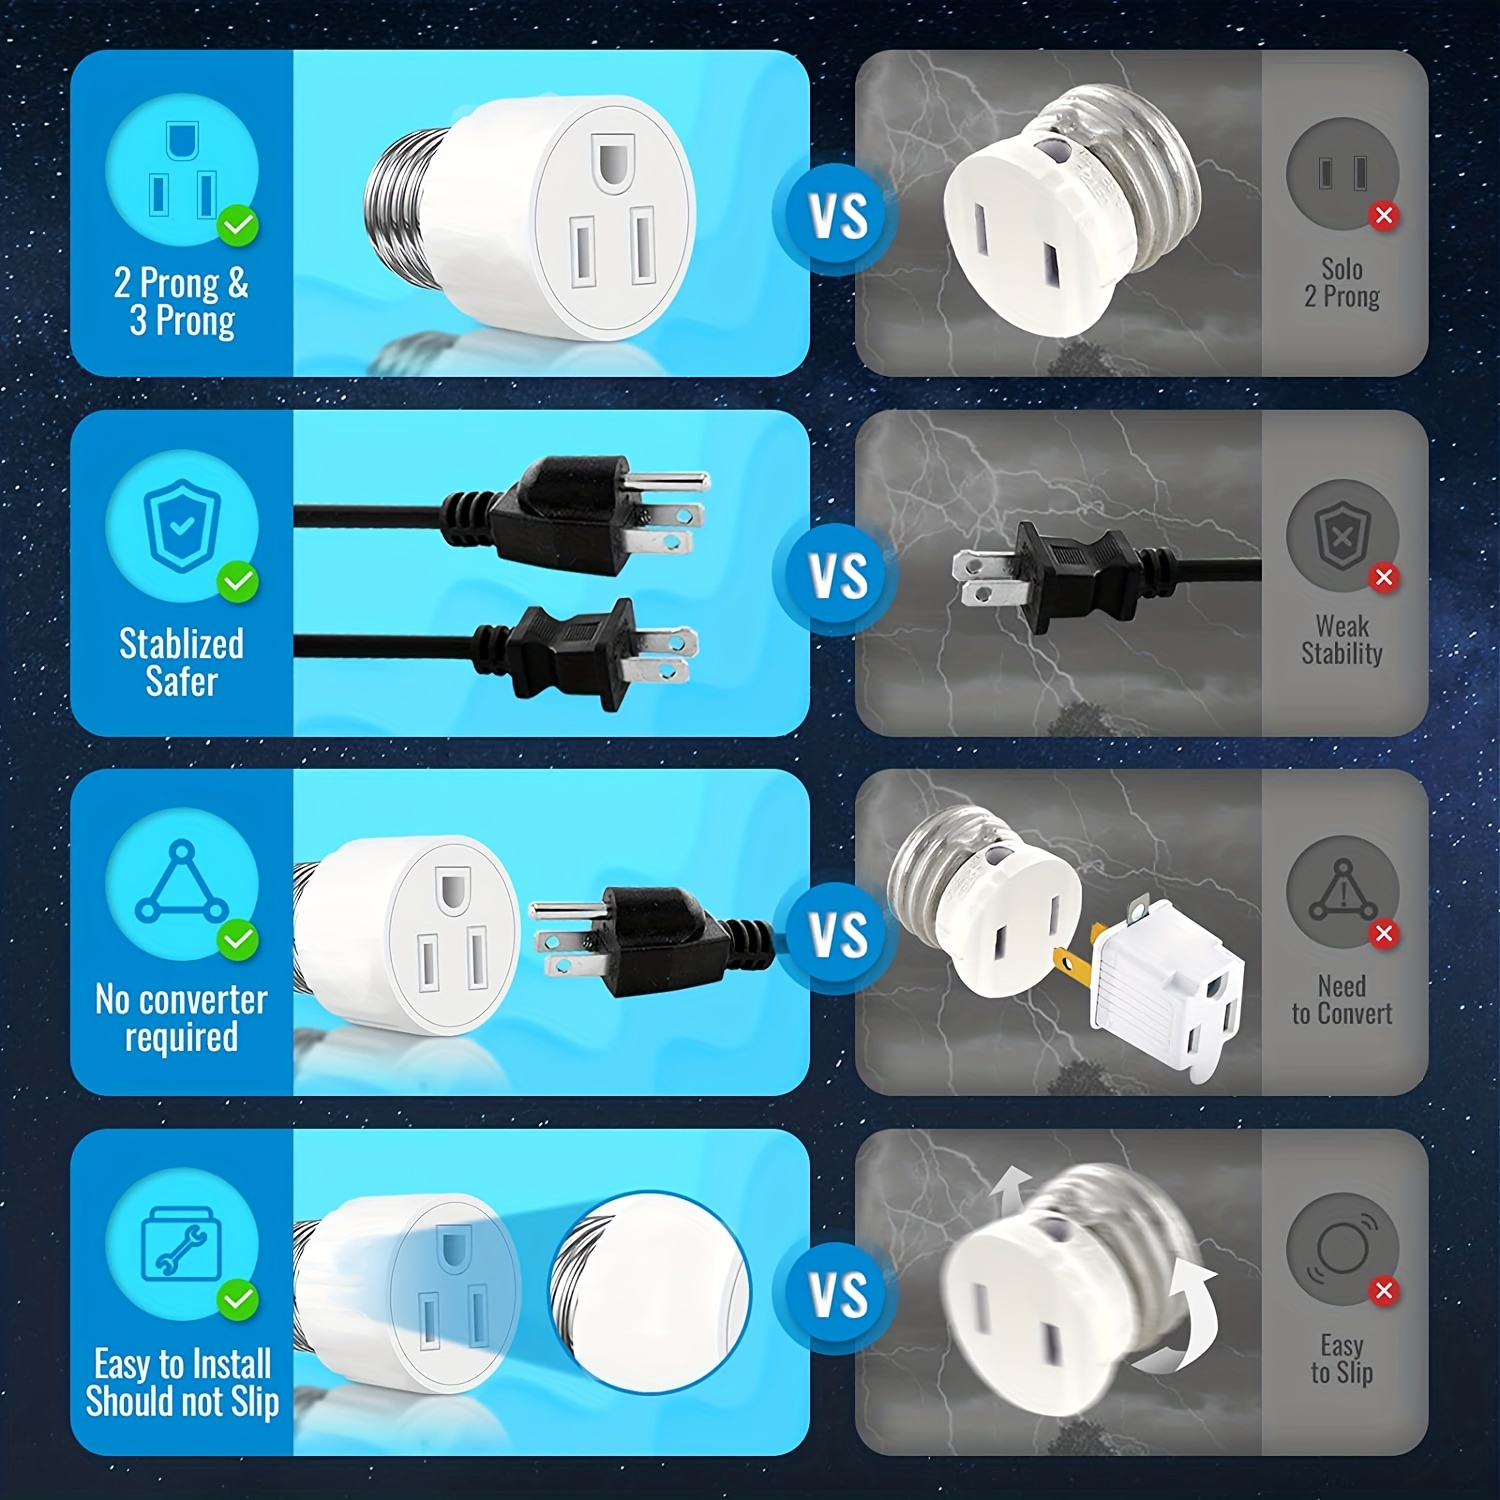 plug in socket light